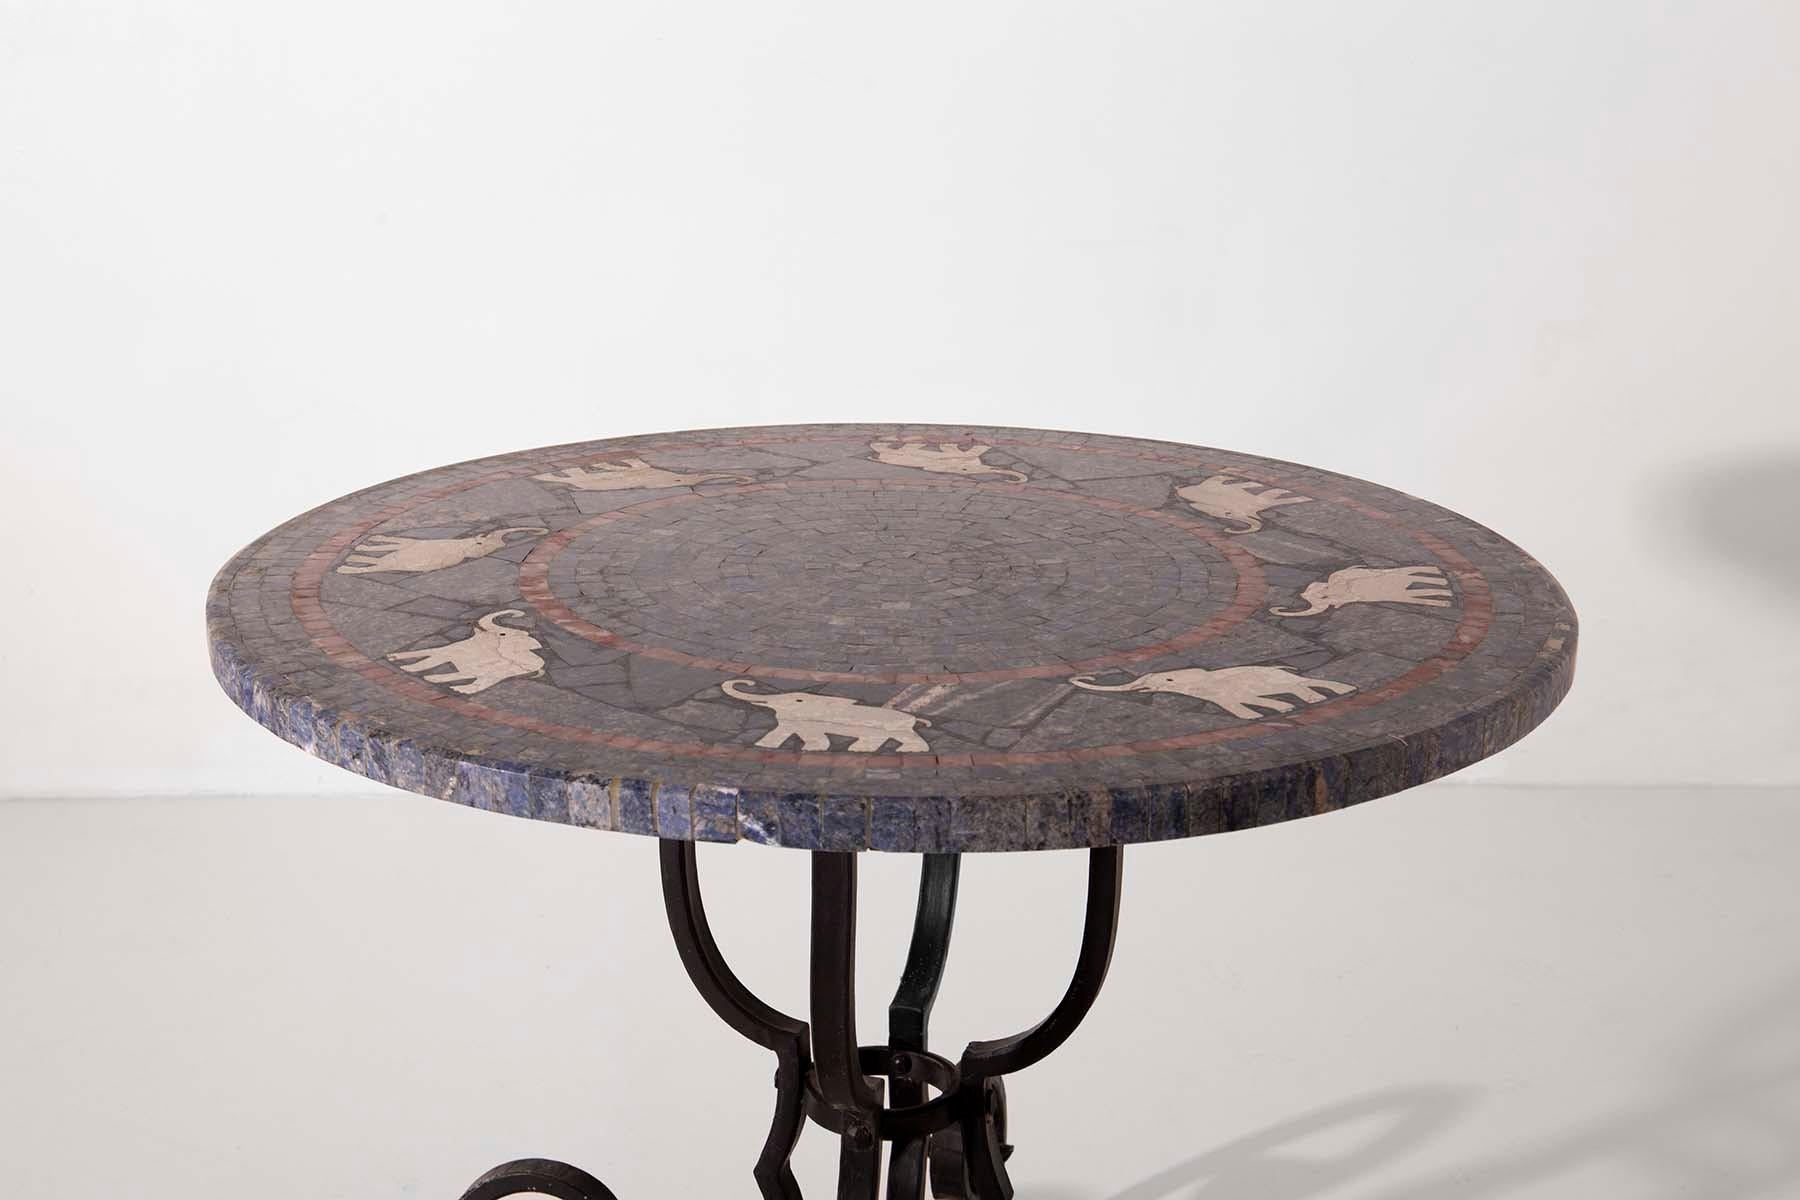 Cette extraordinaire table basse de fabrication italienne datant du début des années 1900 témoigne de l'art et de l'artisanat d'une époque révolue. Les quatre pieds en fer forgé culminent en d'élégantes boucles, ajoutant une touche de grâce à